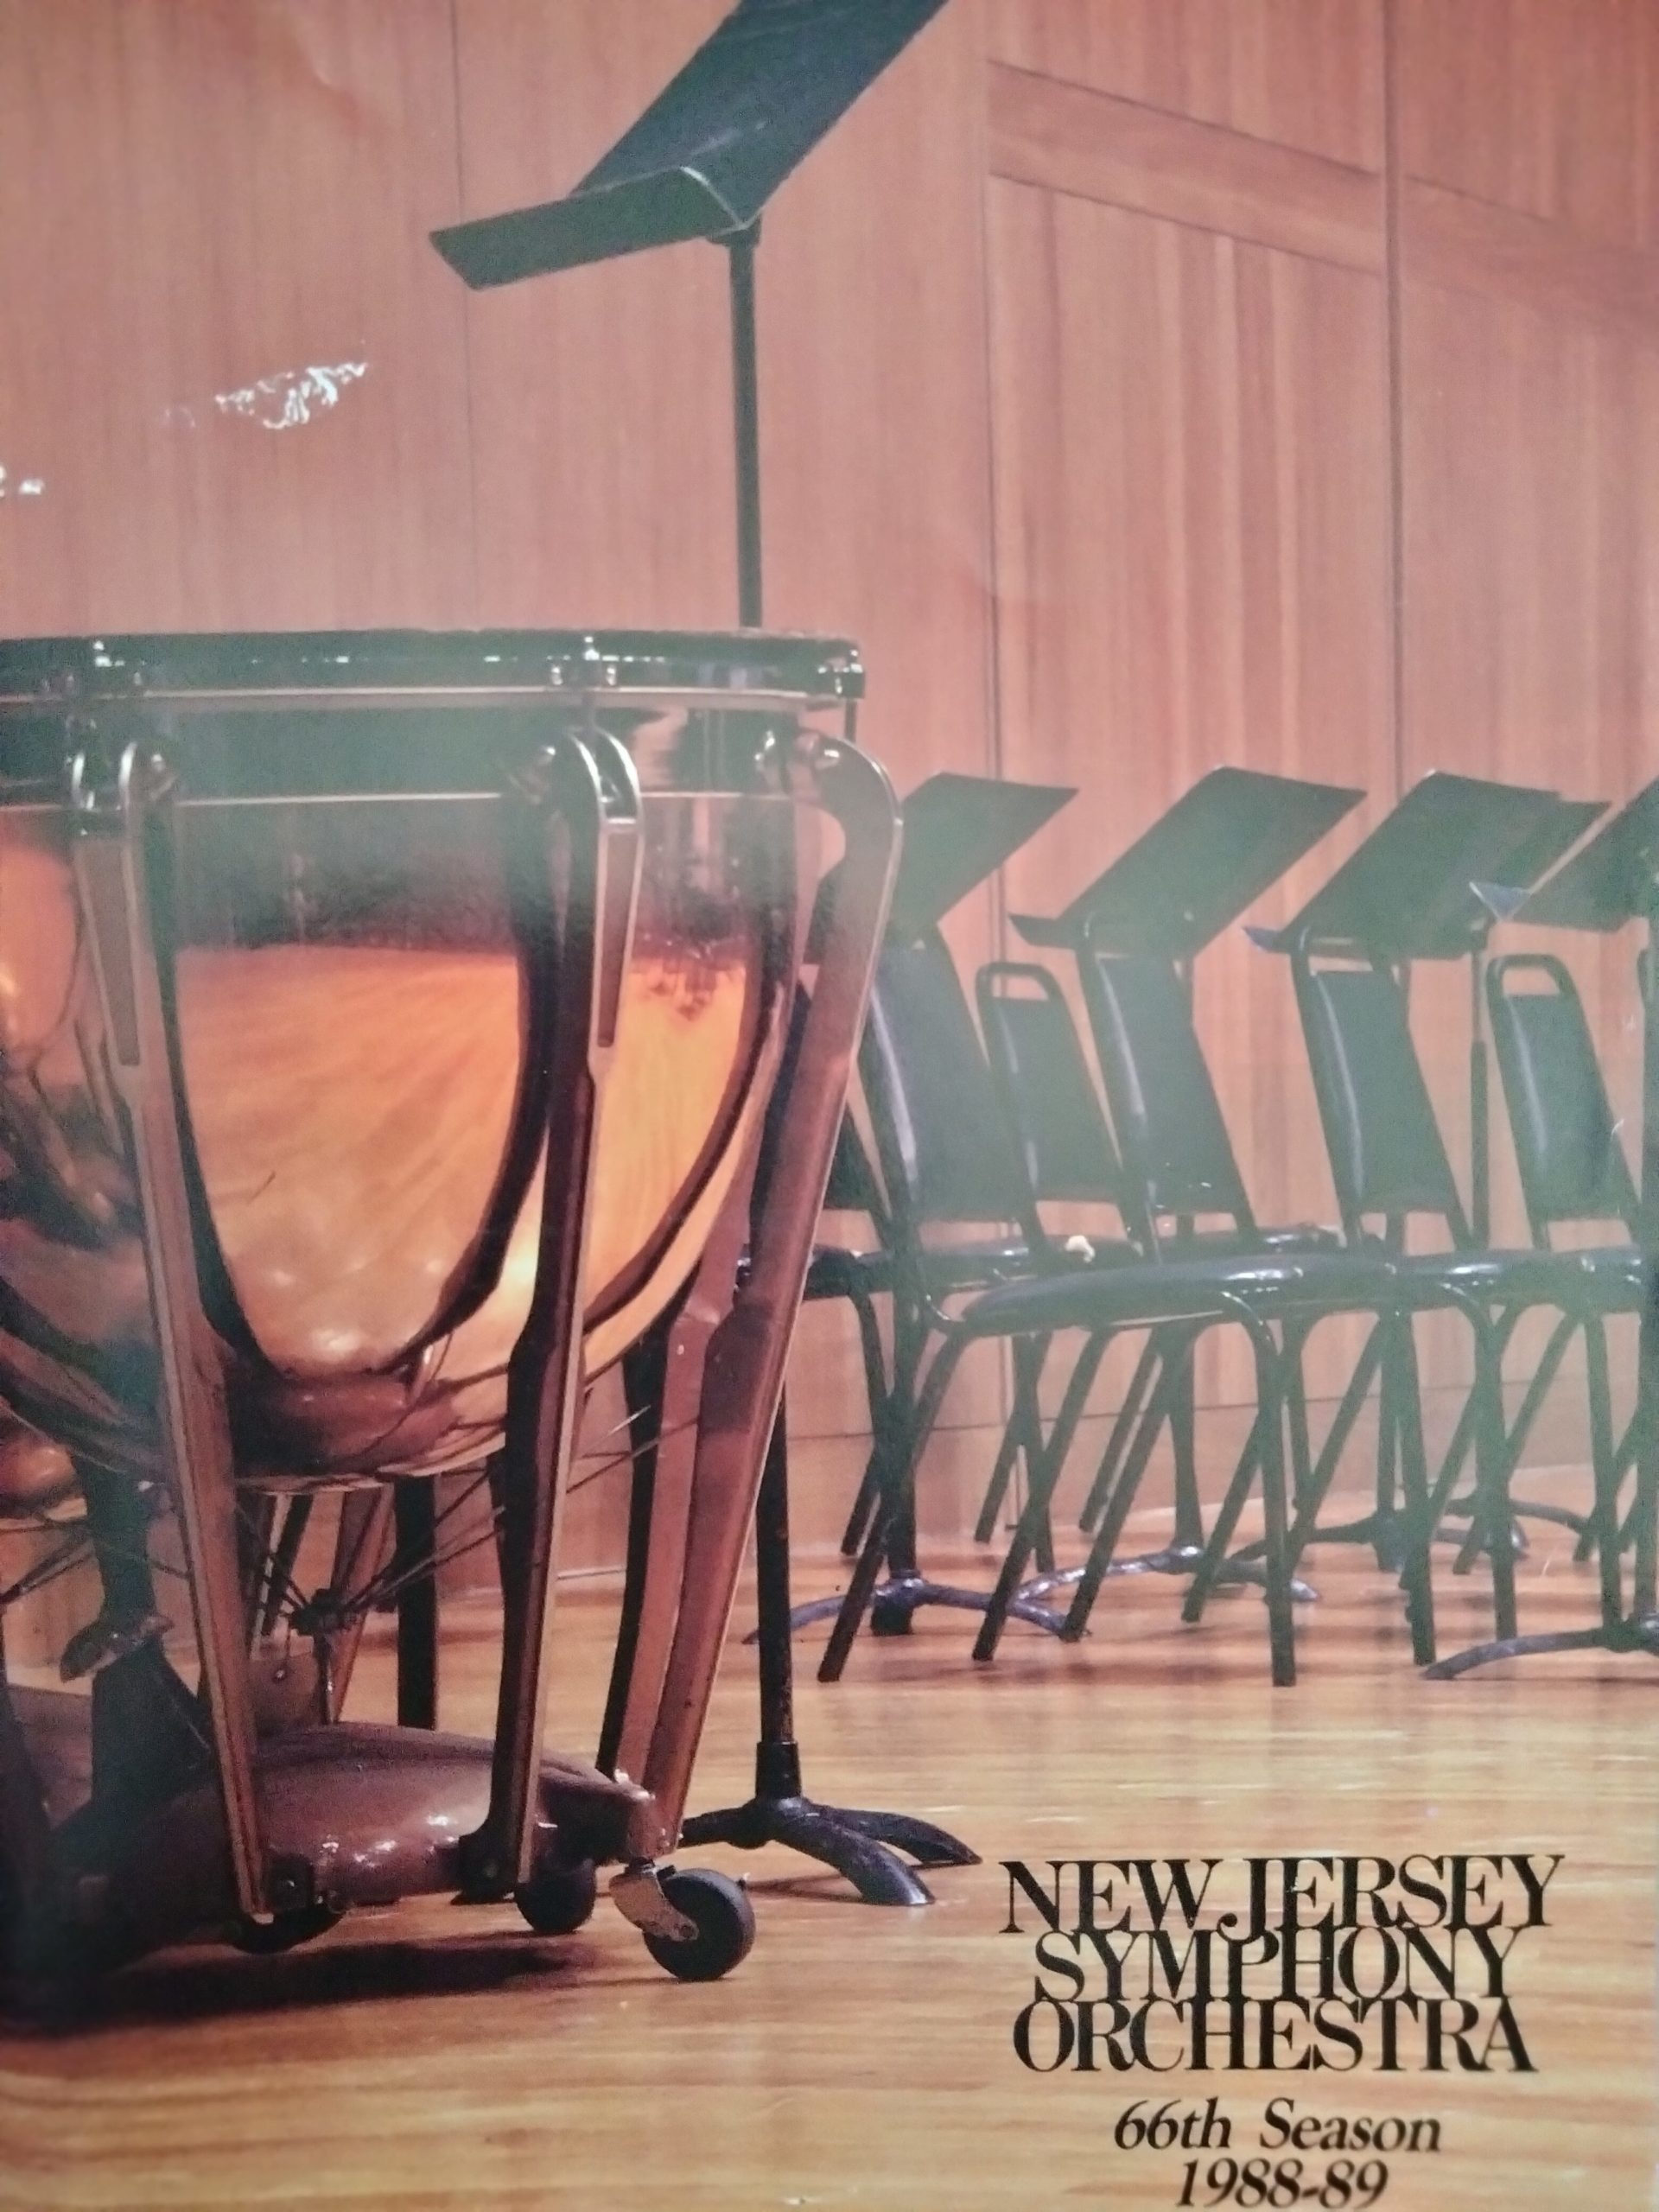 New Jersey Symphony Orchestra program page